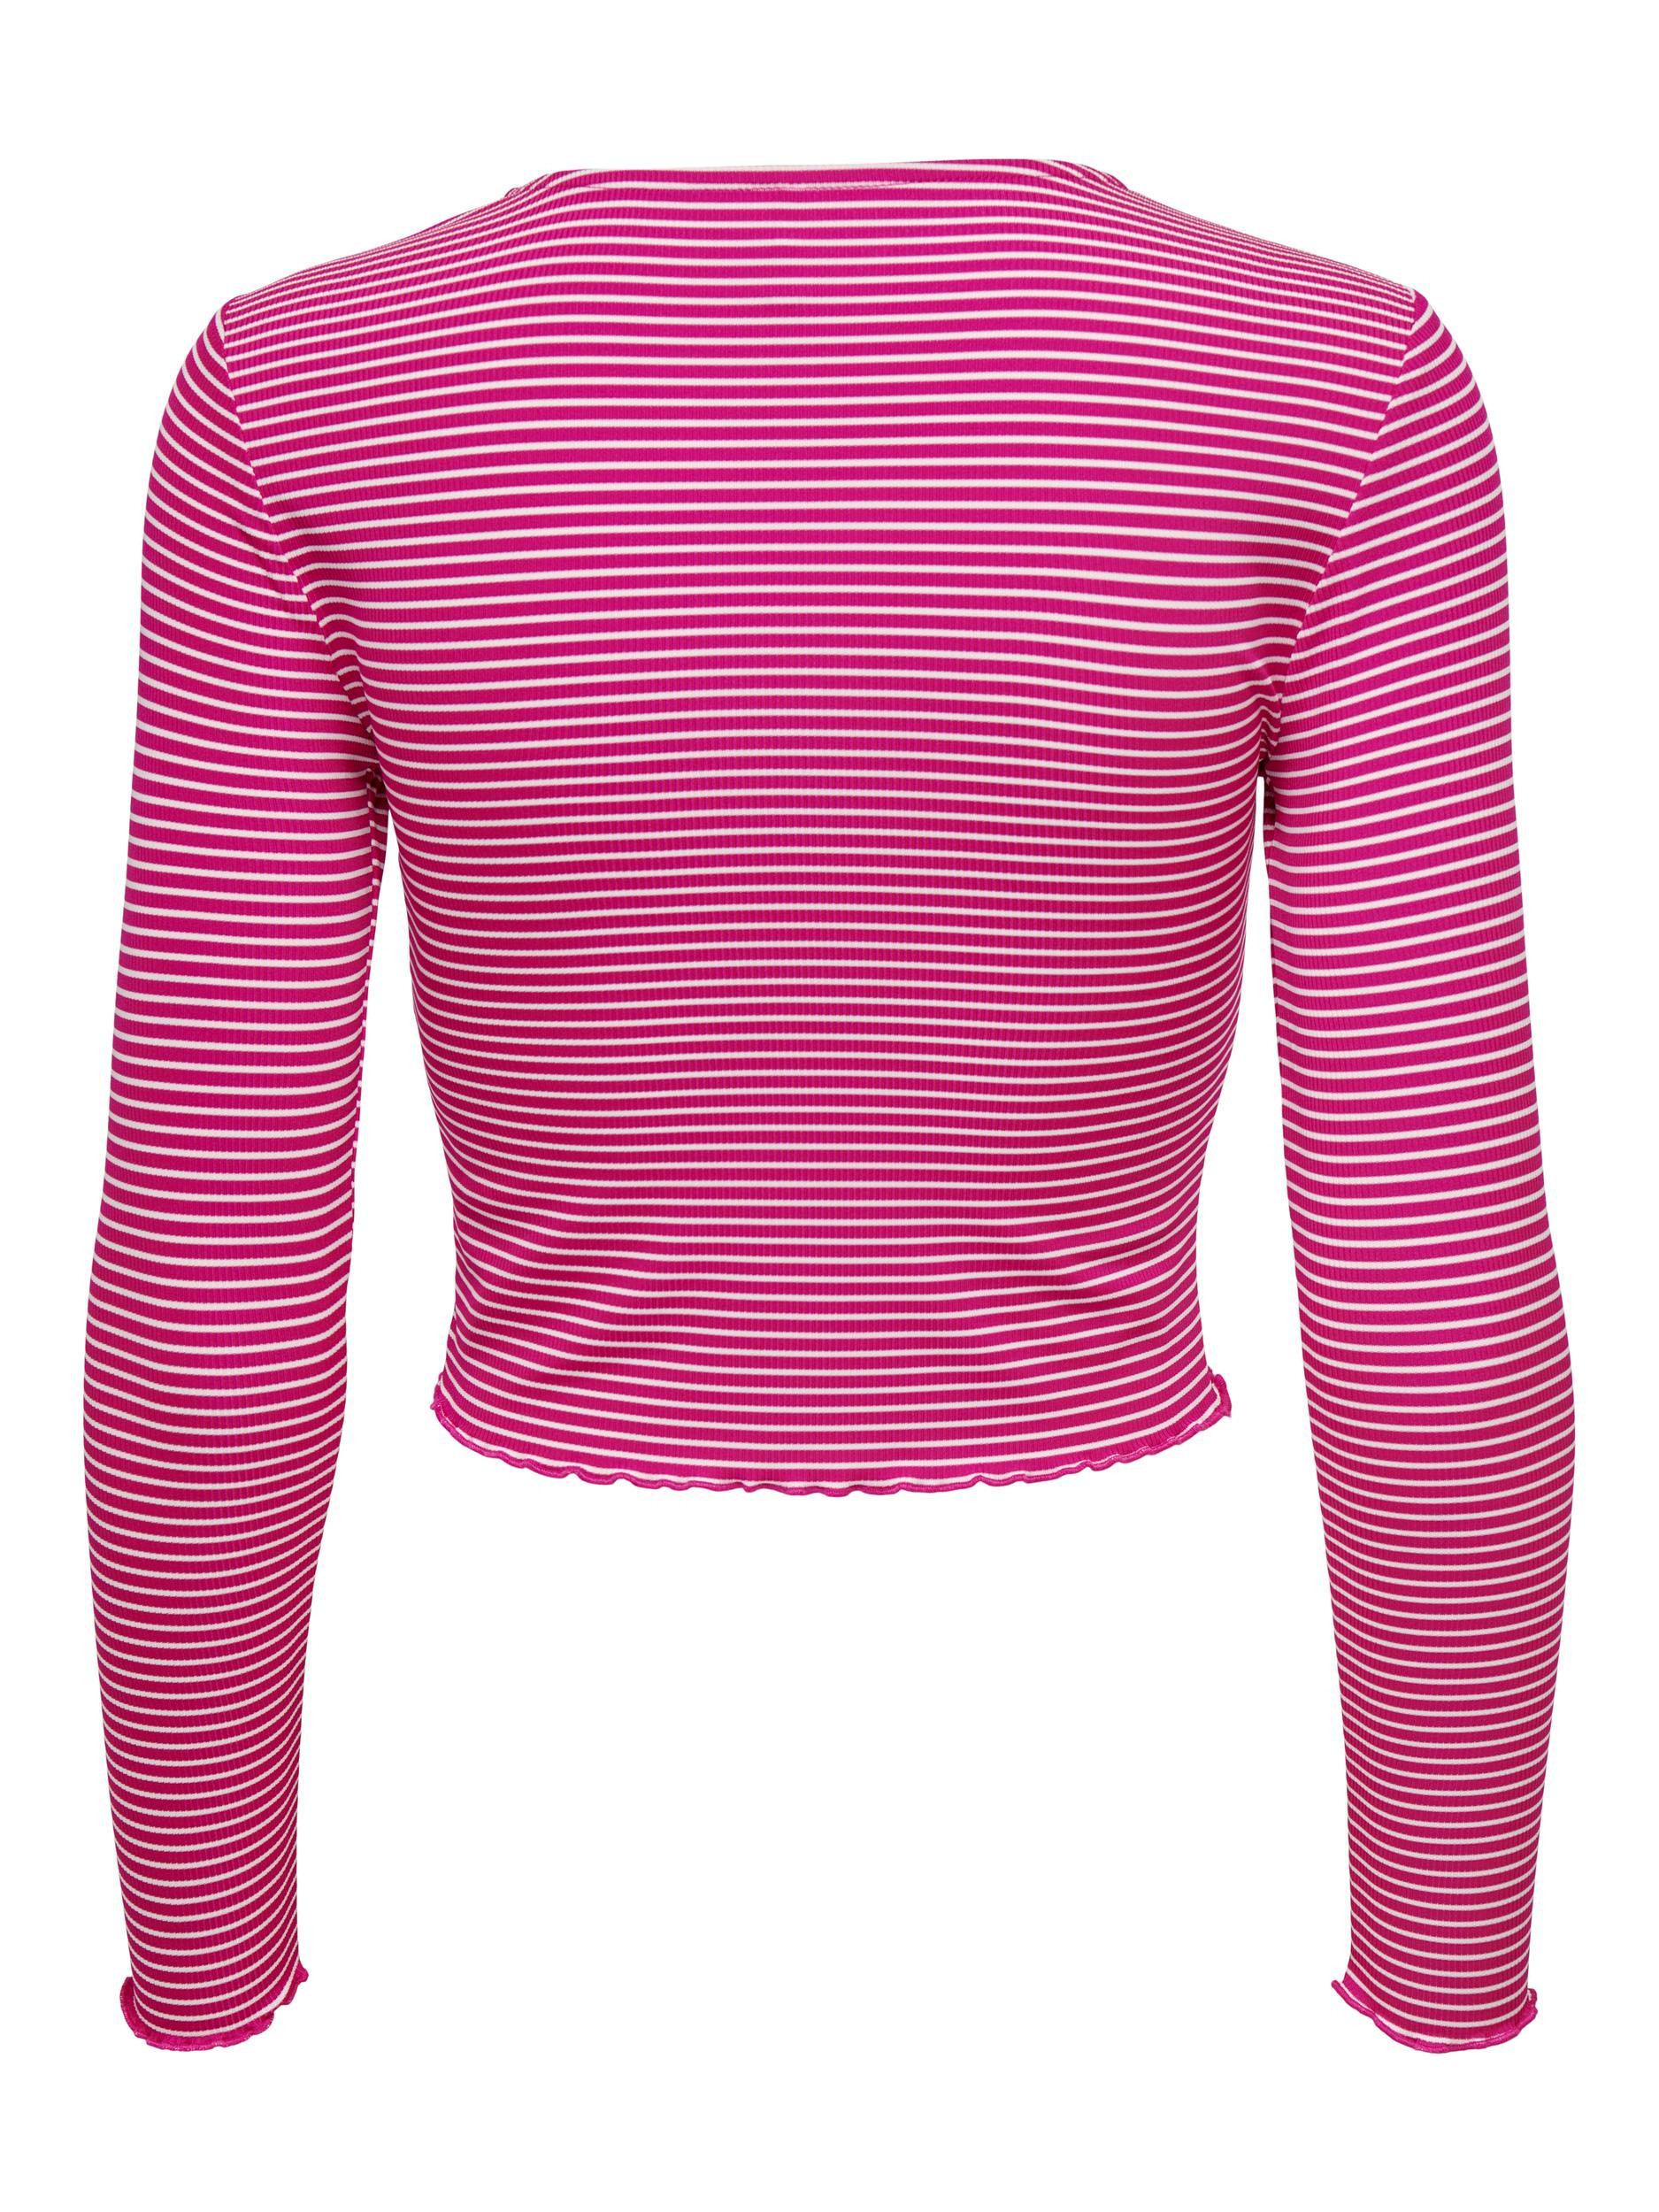 Only - Regular fit striped top, Dark Pink, large image number 1